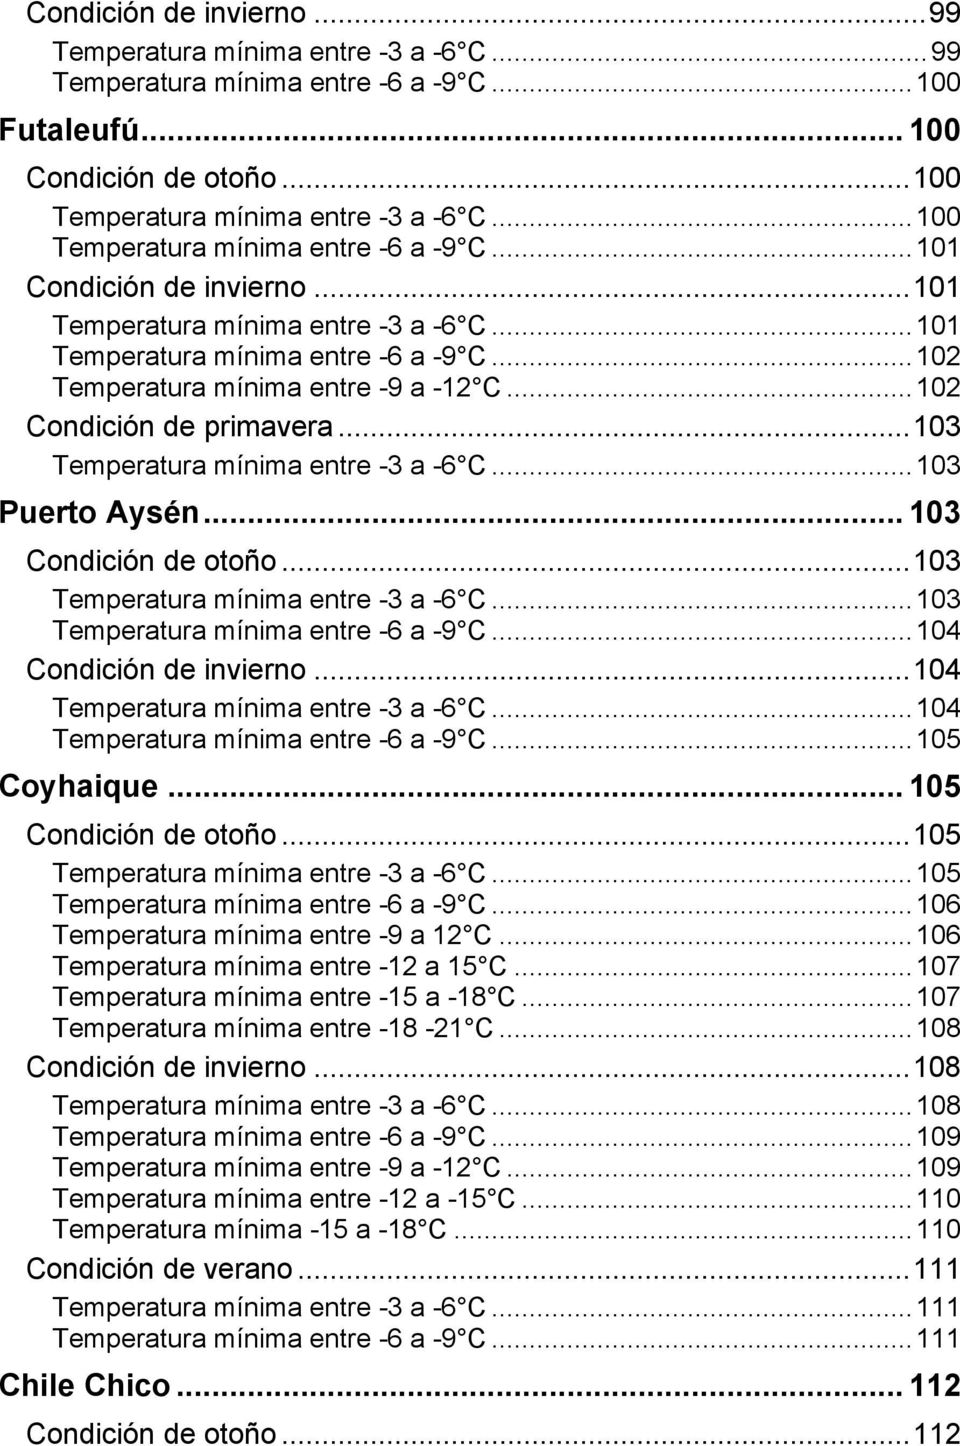 ..102 Condición de primavera...103 Temperatura mínima entre -3 a -6 C...103 Puerto Aysén... 103 Condición de otoño...103 Temperatura mínima entre -3 a -6 C...103 Temperatura mínima entre -6 a -9 C.